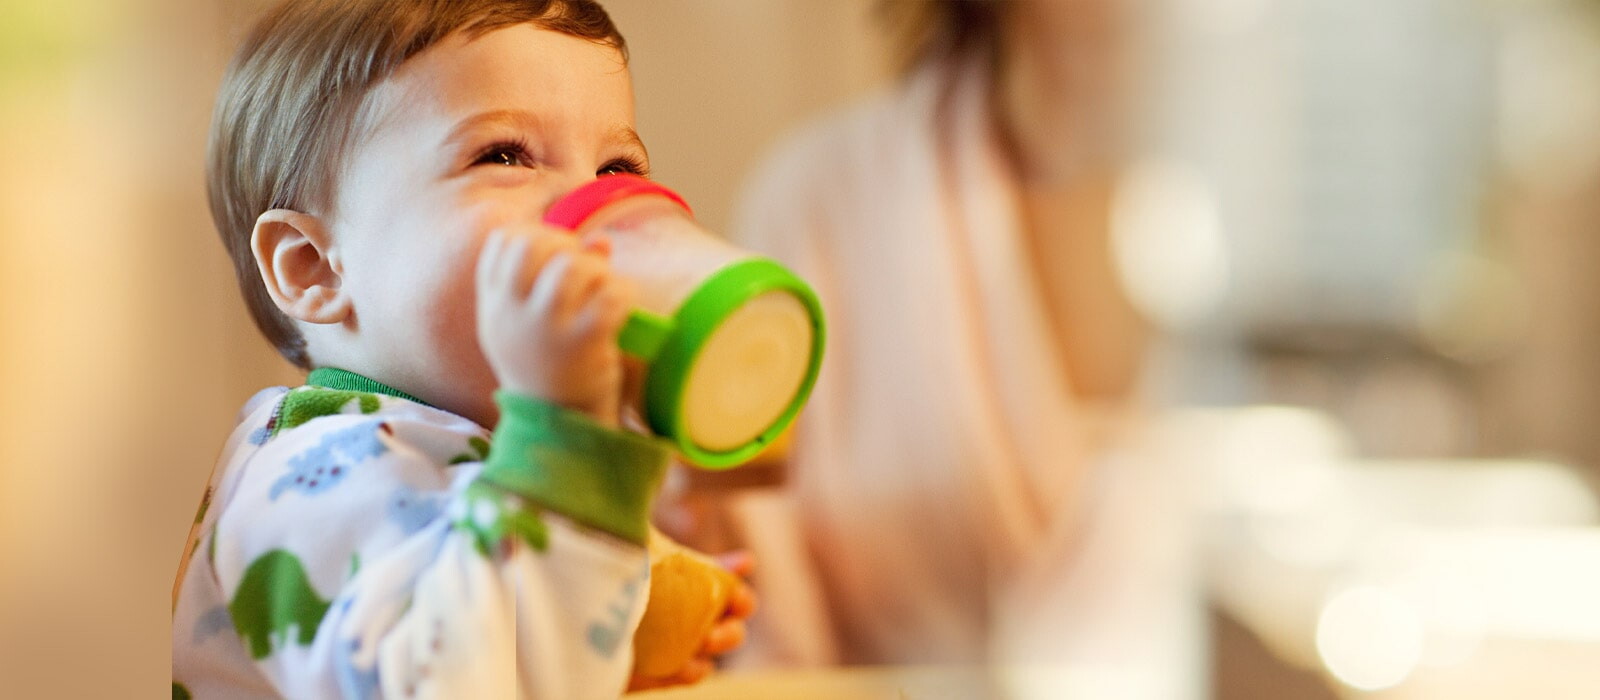 建議配方奶泡完放超過兩小時不要給寶寶喝，家長們也要注意每次泡奶的量